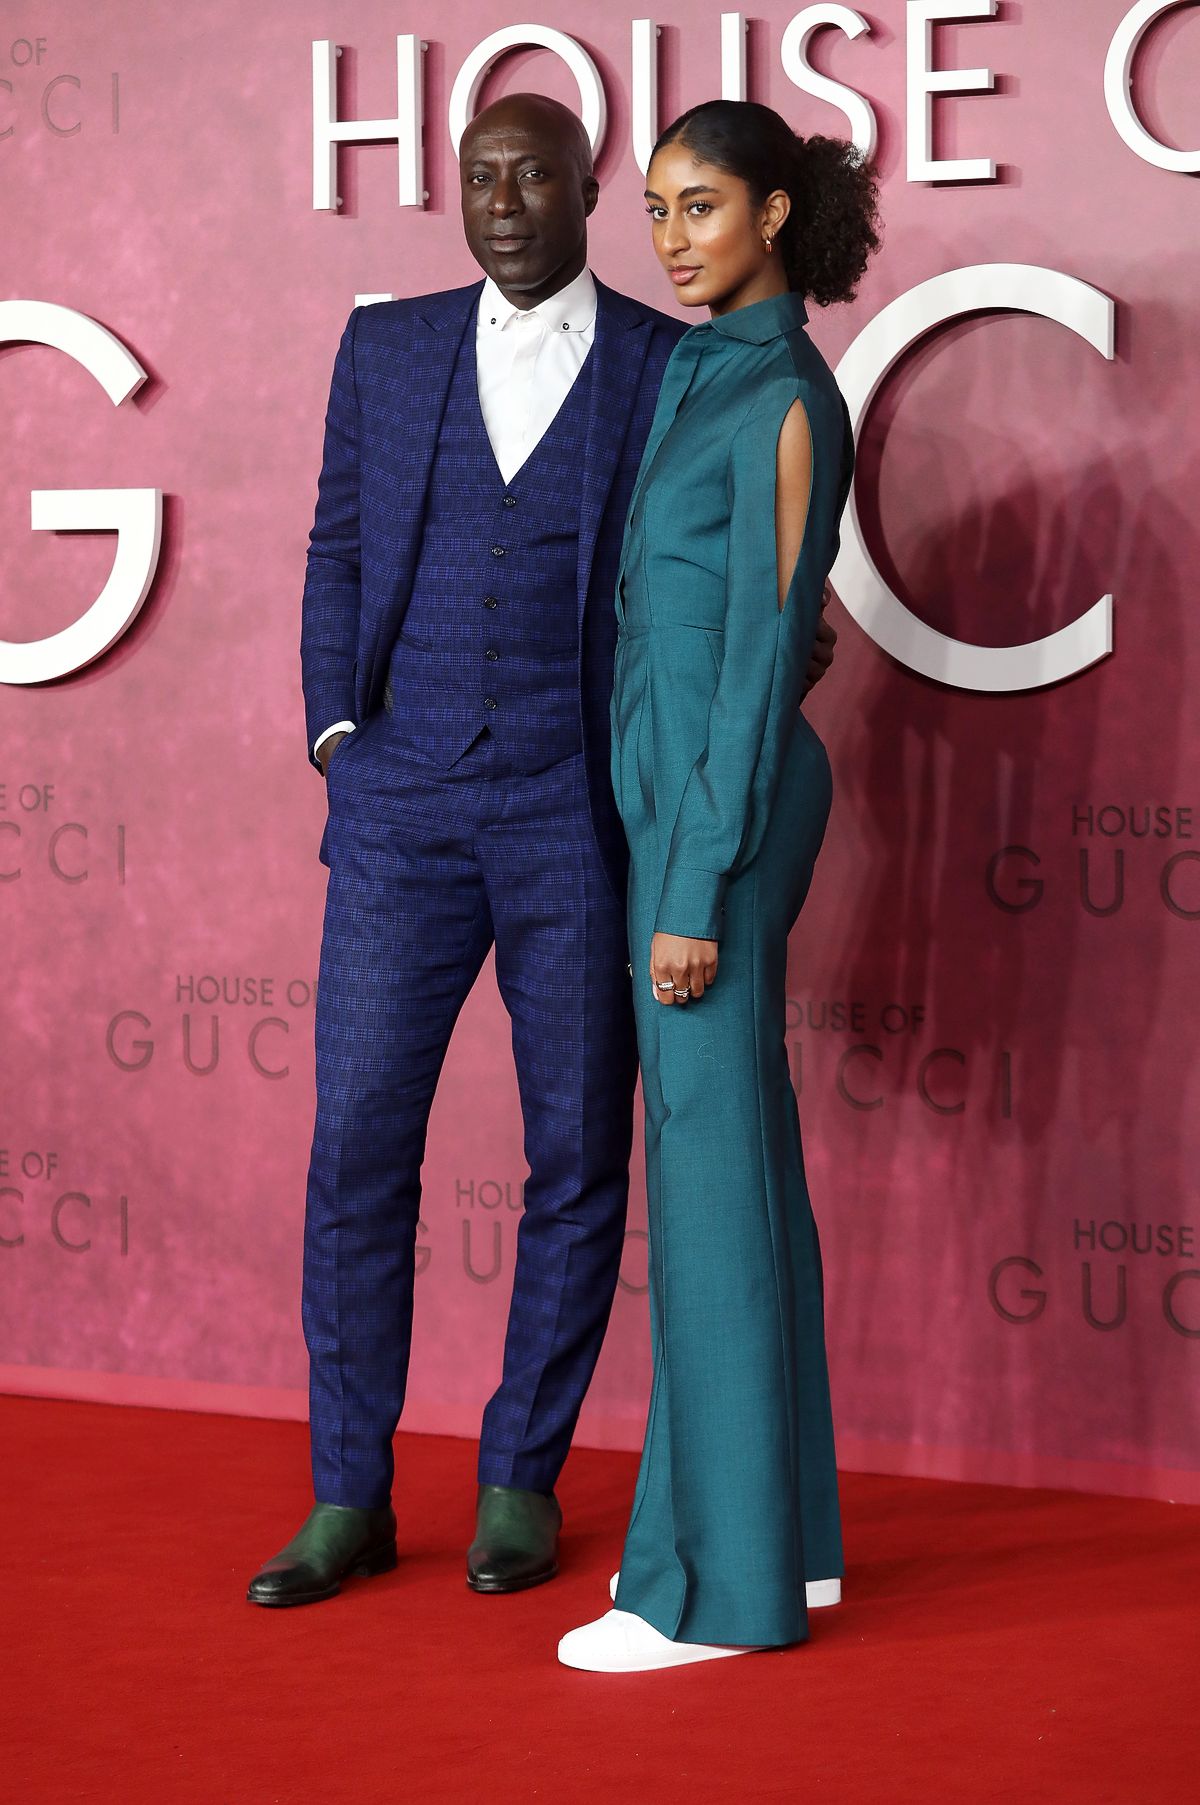 Освальд Боатенг с дочерью Емилией Боатенг на премьере фильма «Дом Gucci» в Лондоне